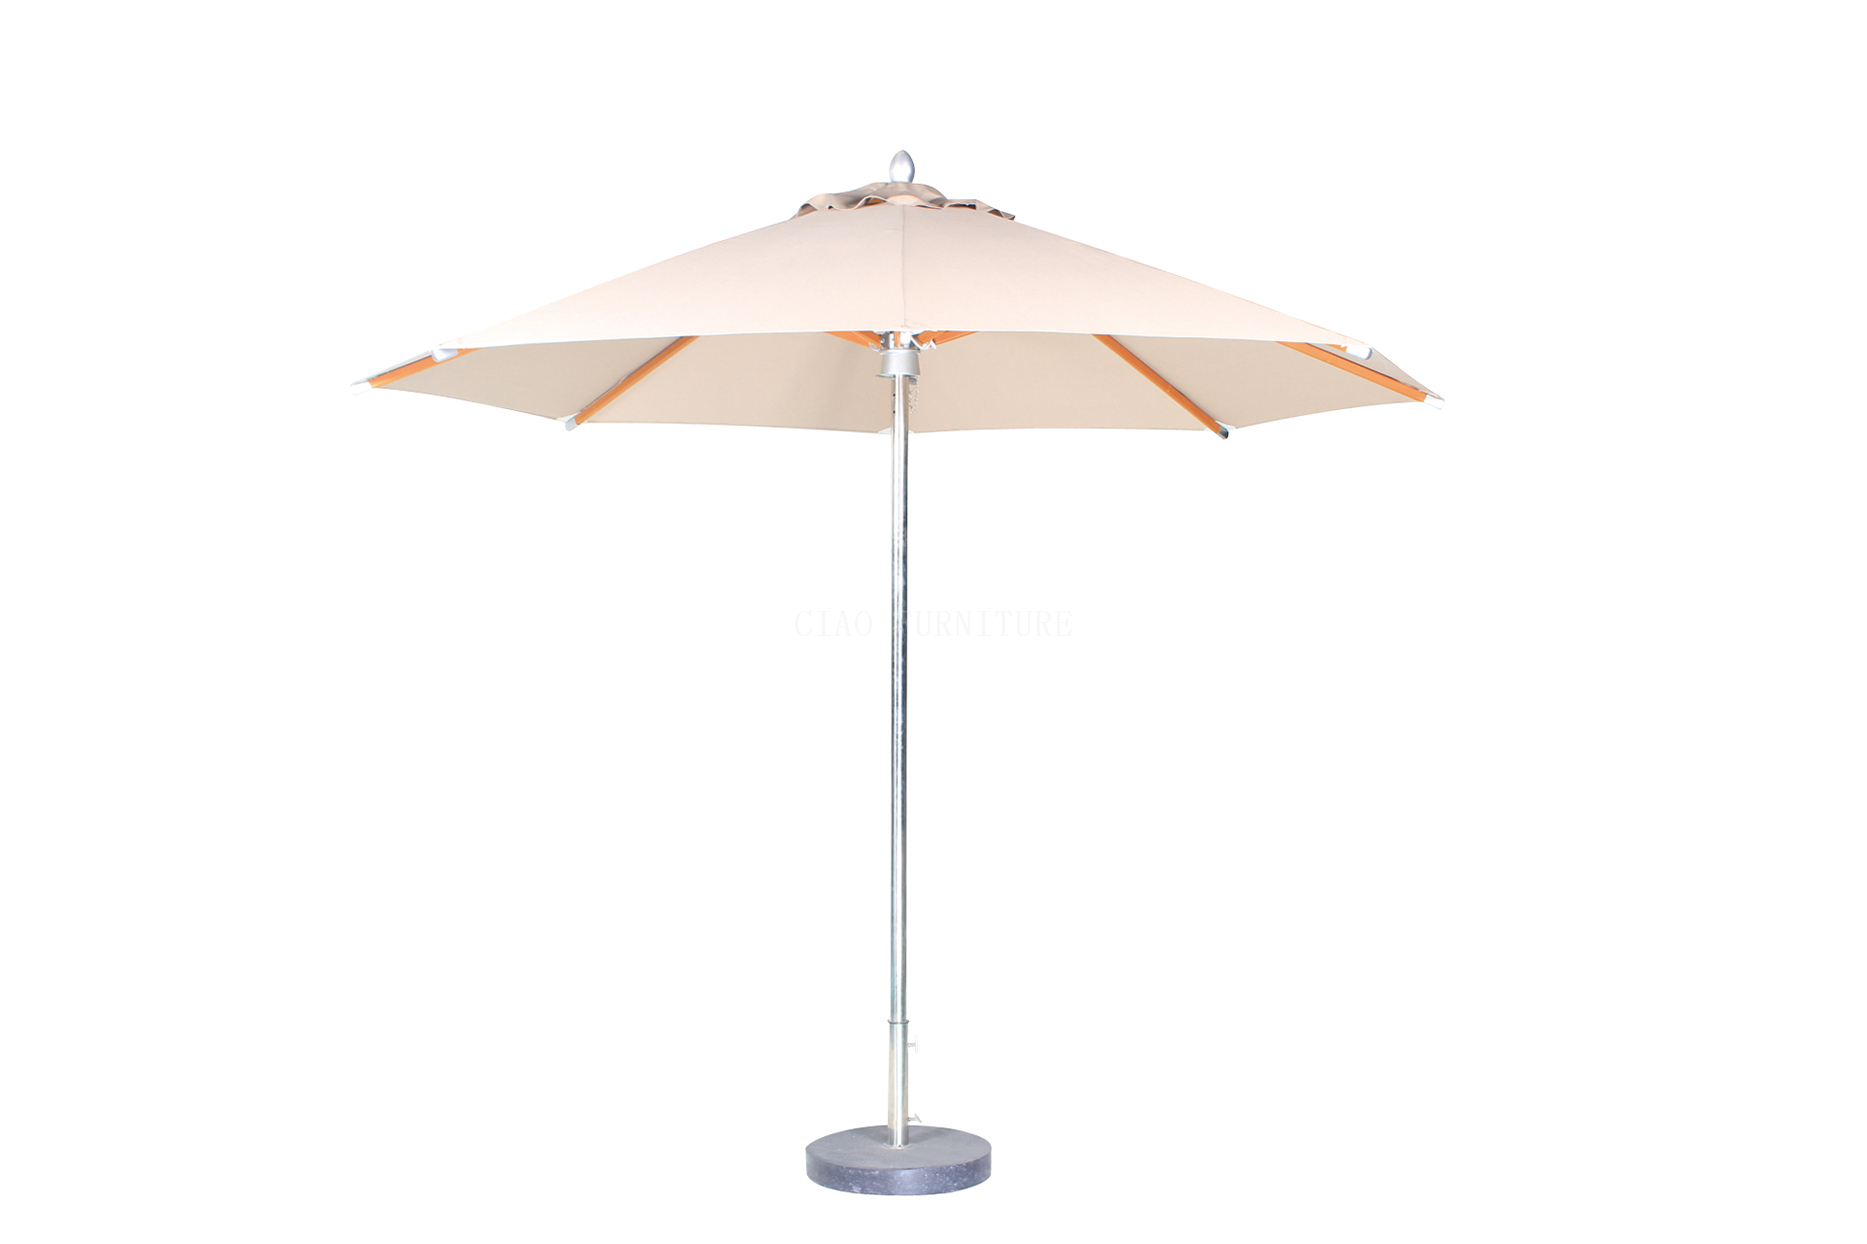 Waterproof outdoor patio sun umbrella